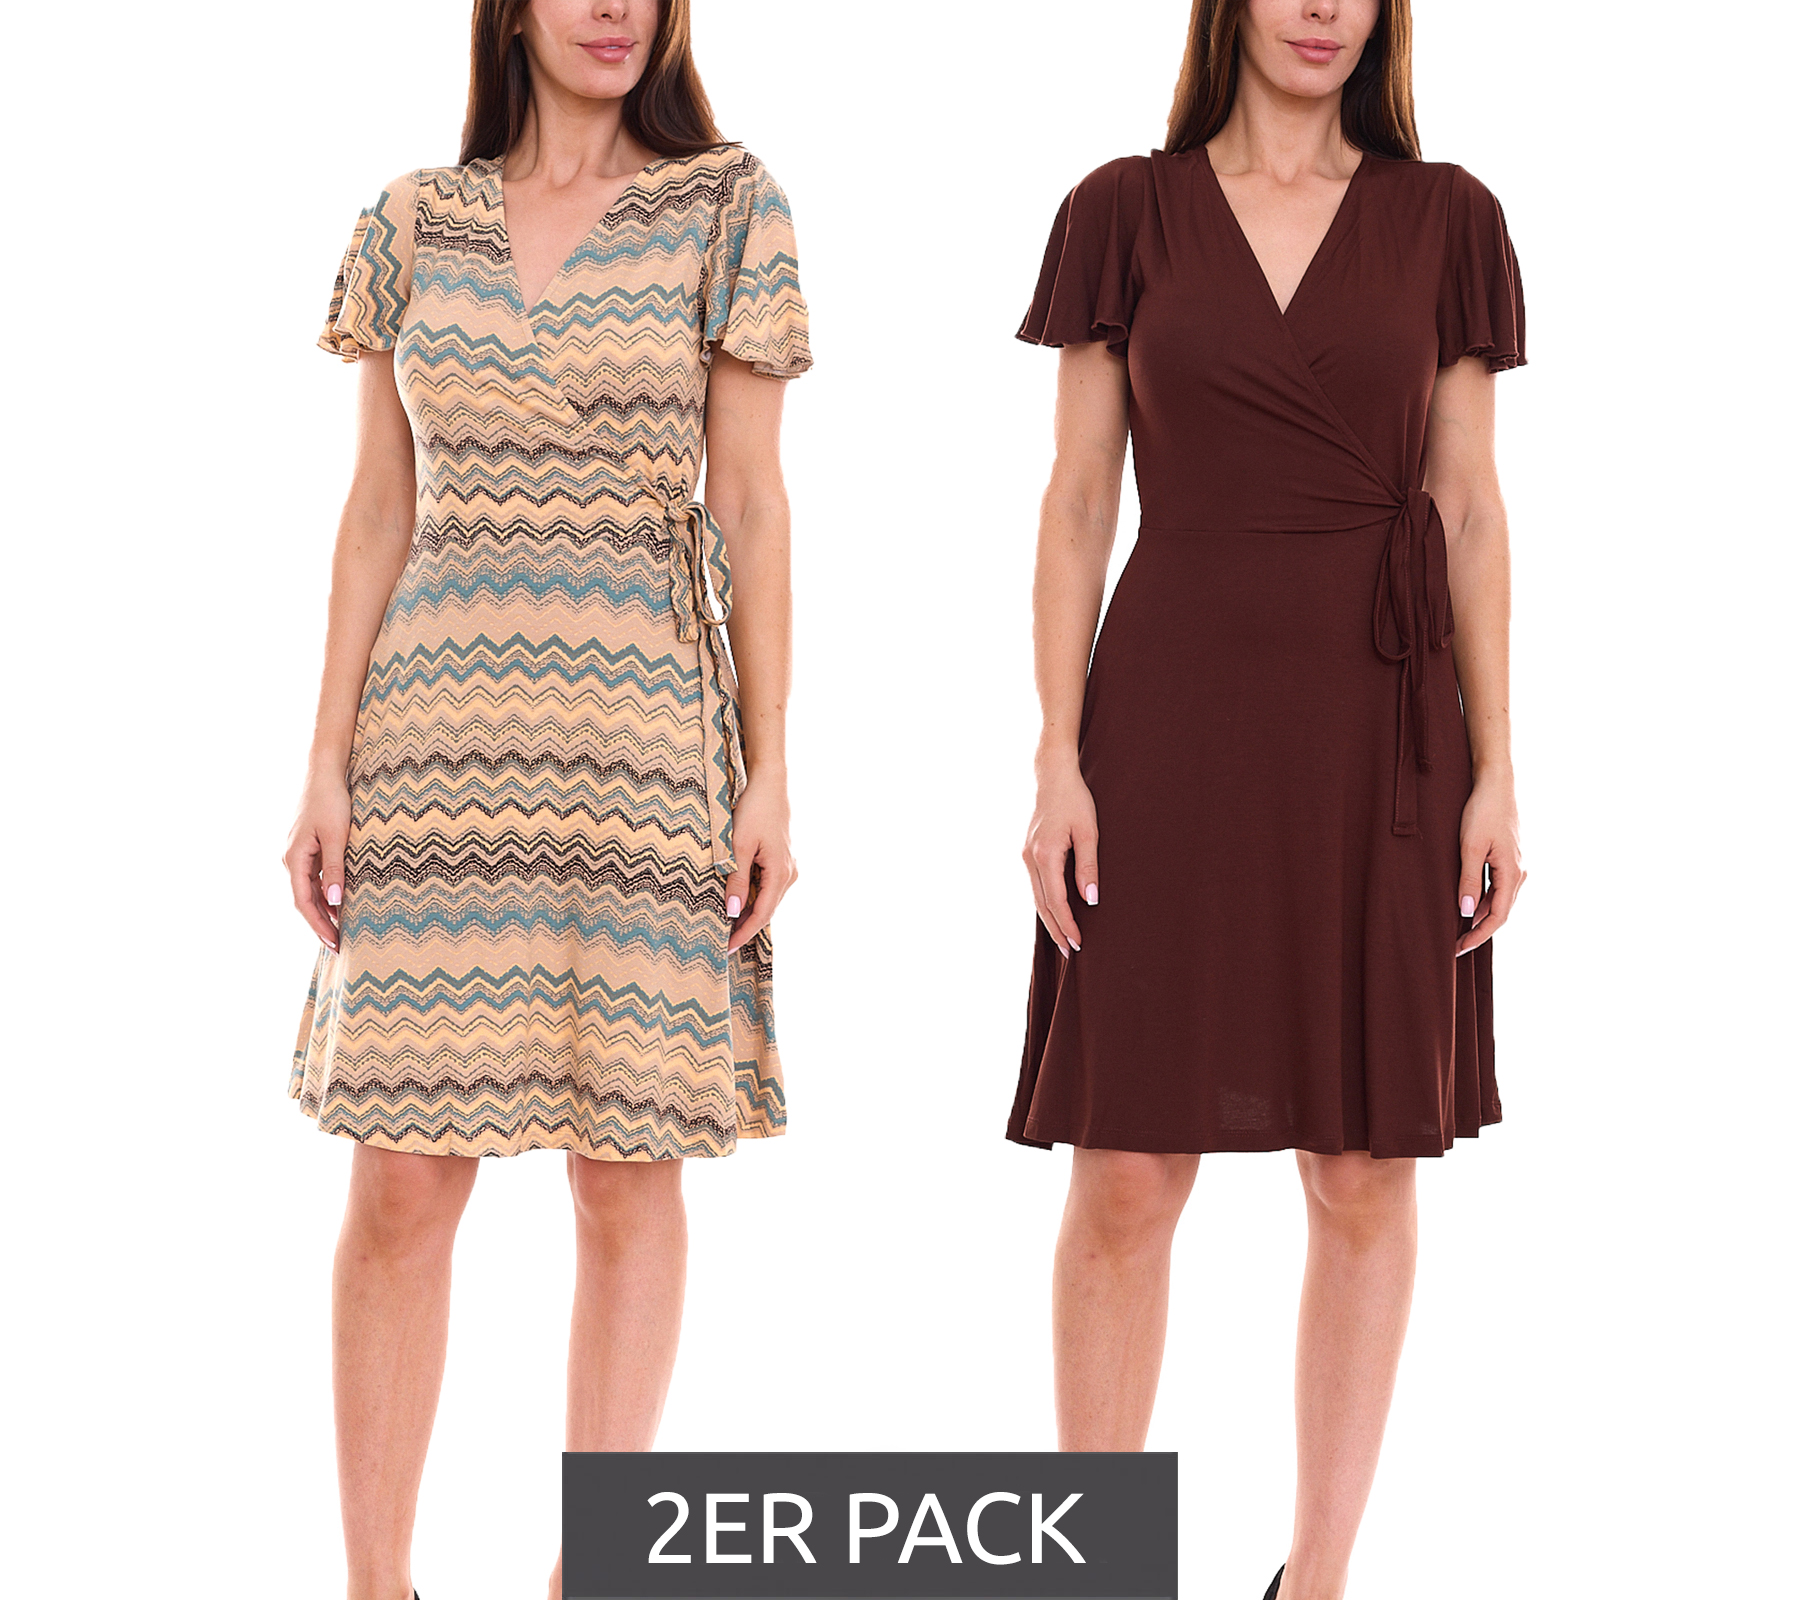 2er Pack Laura Scott Damen Wickel-Kleid schicke Mini-Kleid mit Allover Zacken-Muster 61595346 Braun/Bunt von Laura Scott